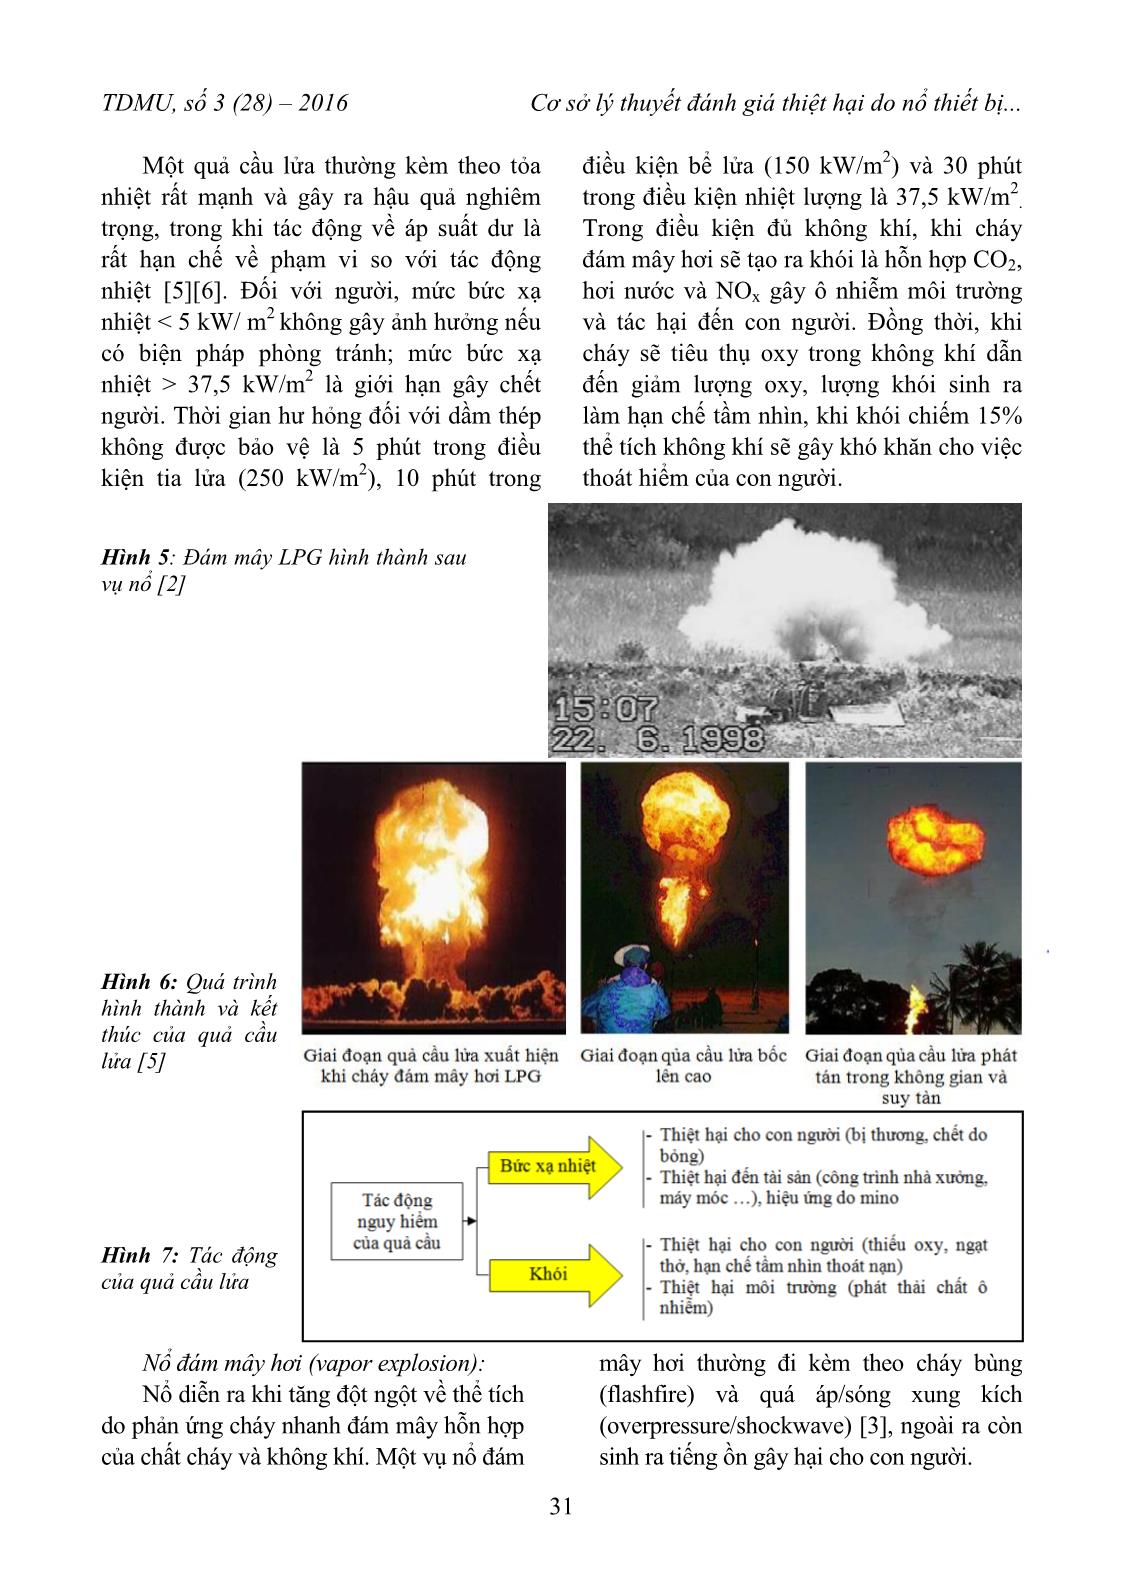 Cơ sở lý thuyết đánh giá thiệt hại do nổ thiết bị chứa khí công nghiệp trong đánh giá rủi ro môi trường trang 5